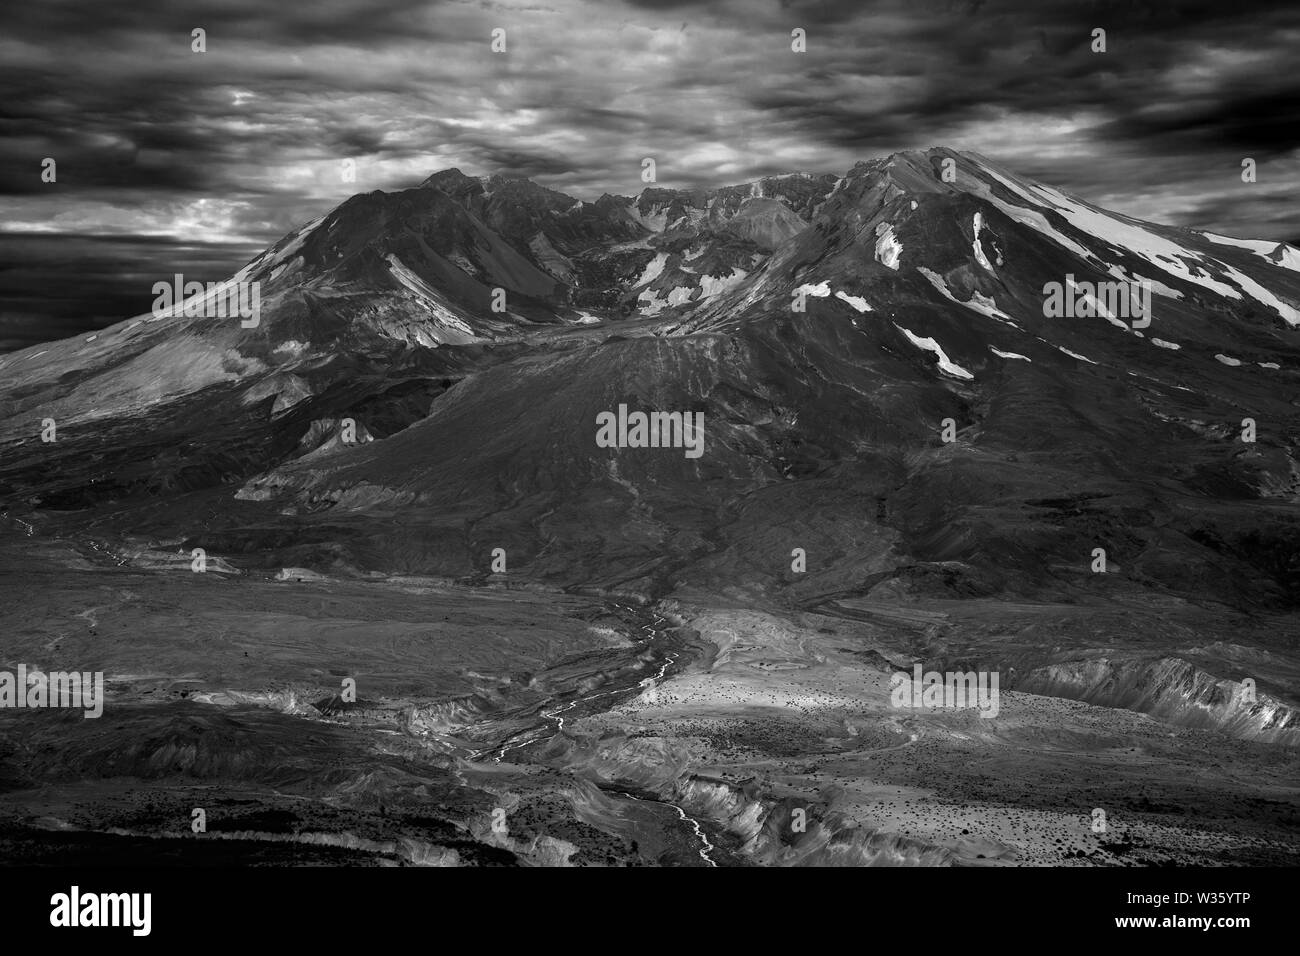 Mt St. Helen ist ein perfektes Beispiel dafür, wie gut Natur tut, ohne die Menschheit einzugreifen, jede Richtung, jede Hilfe, Heilung tritt auf und wird völlig. Stockfoto